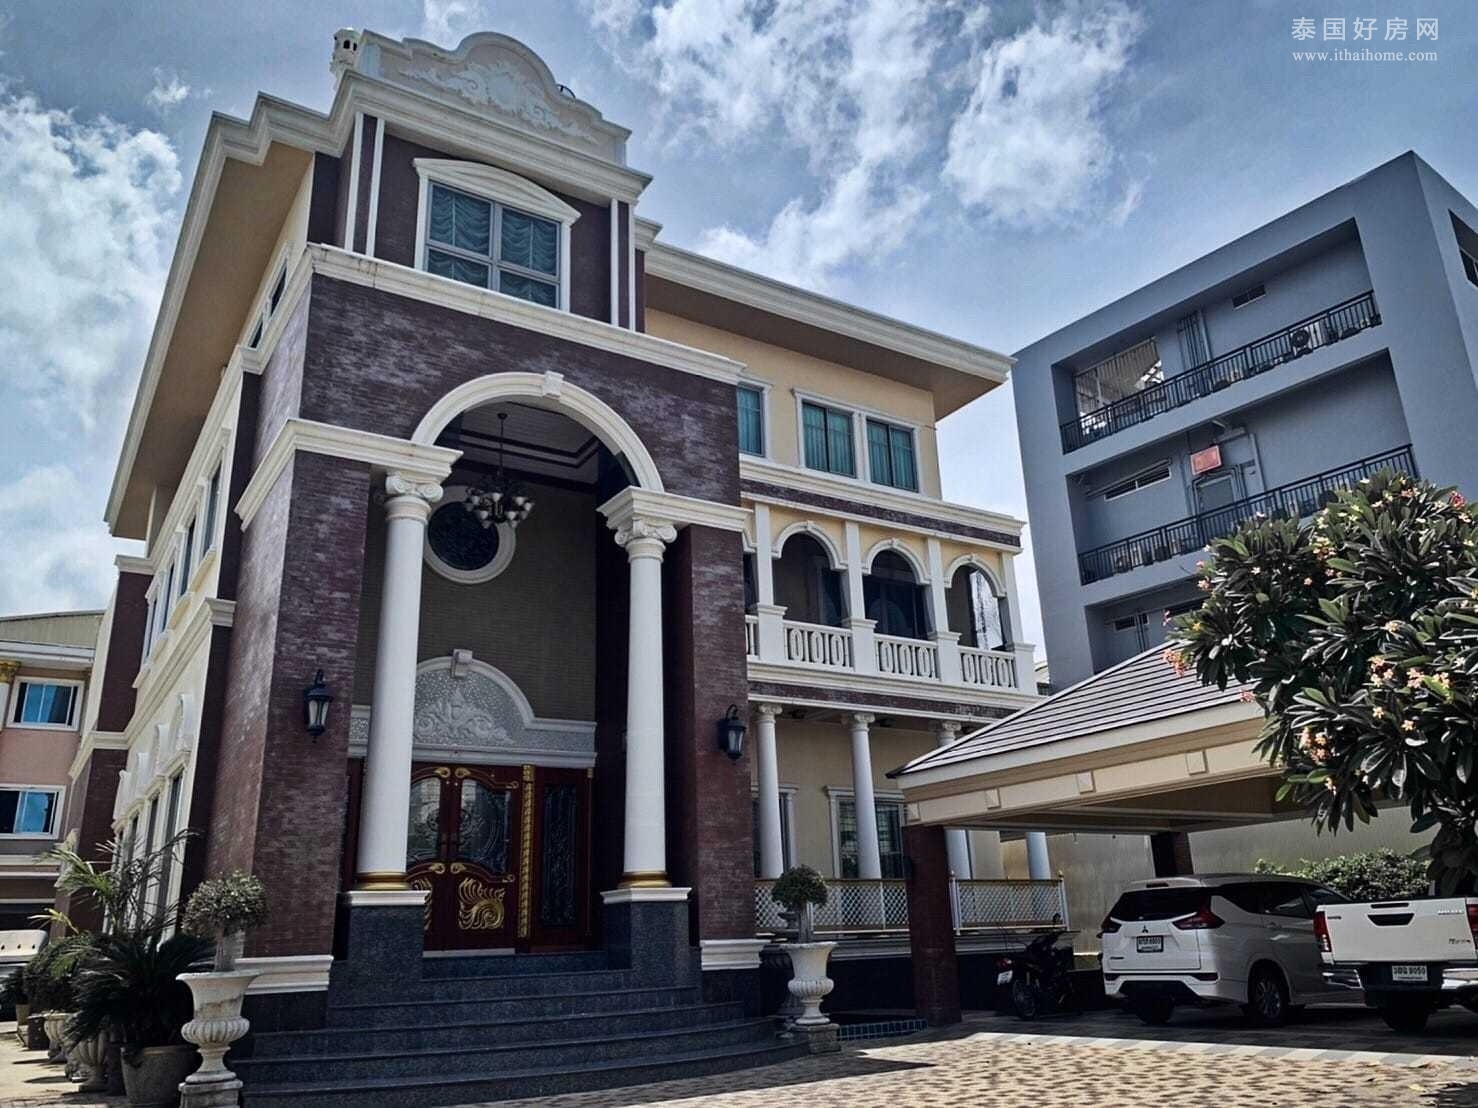 【推荐】Prachauthit 33 独栋别墅出售 5卧占地1,840平米 售8,000万泰铢